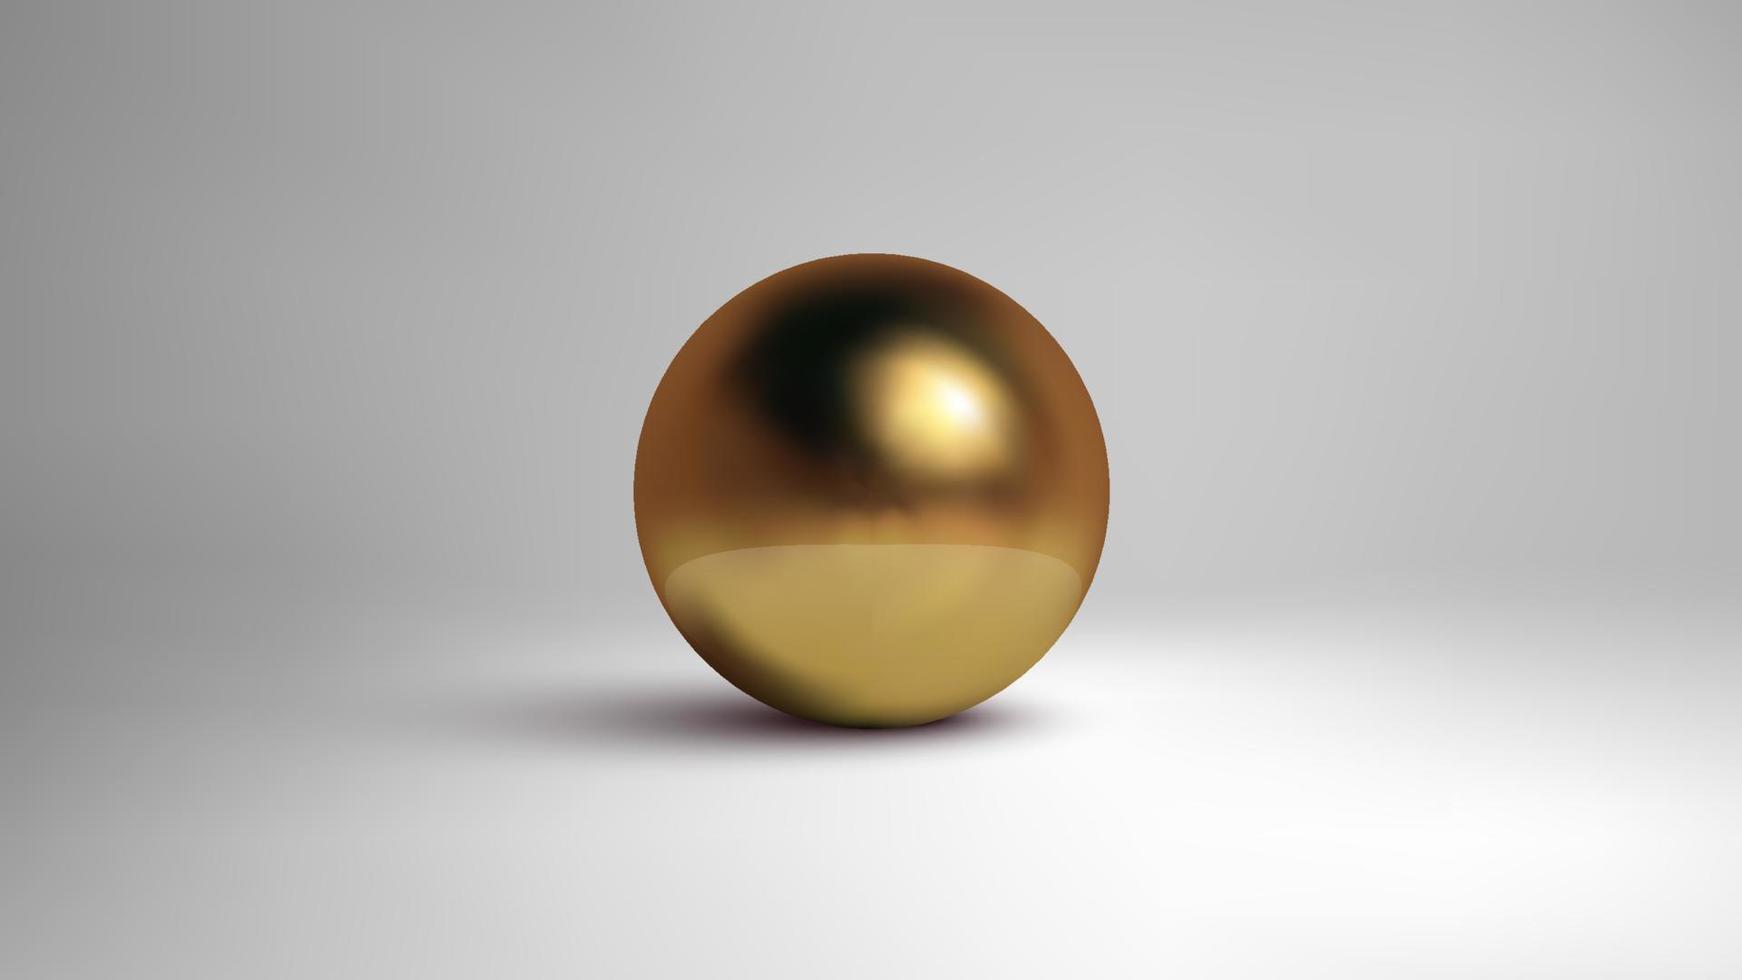 esfera dourada isolada no fundo branco. ilustração em vetor 3D.